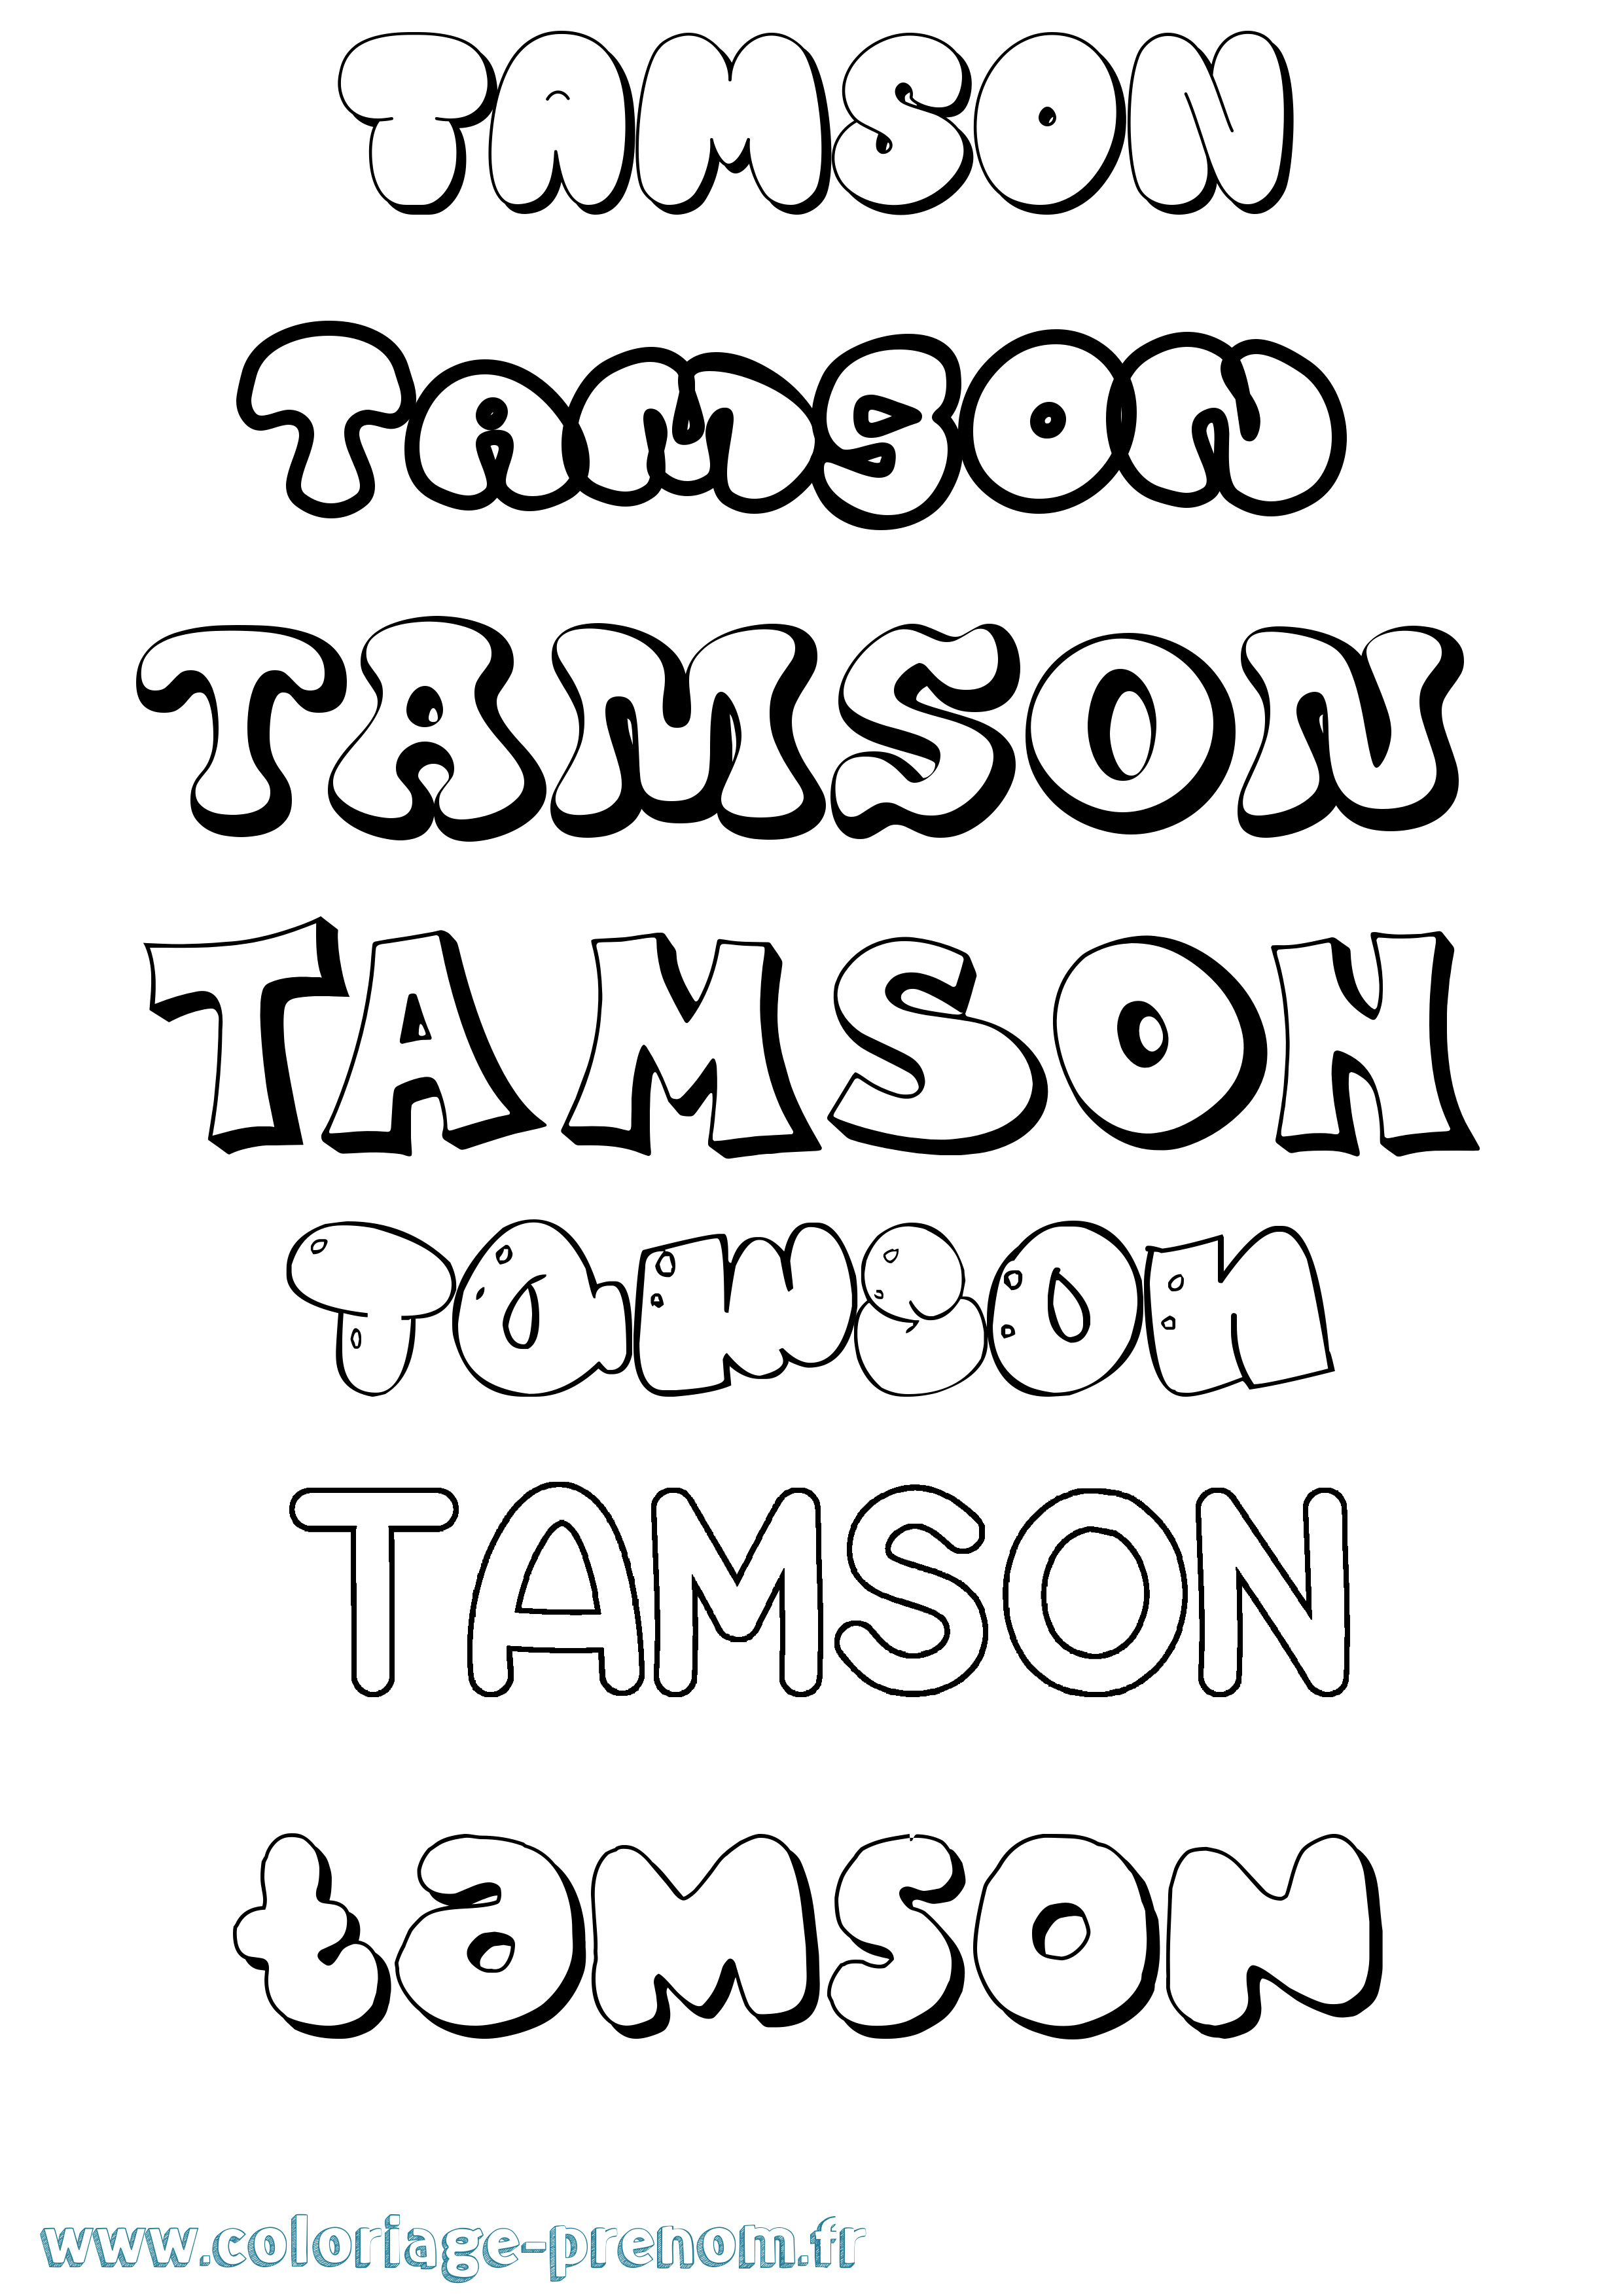 Coloriage prénom Tamson Bubble